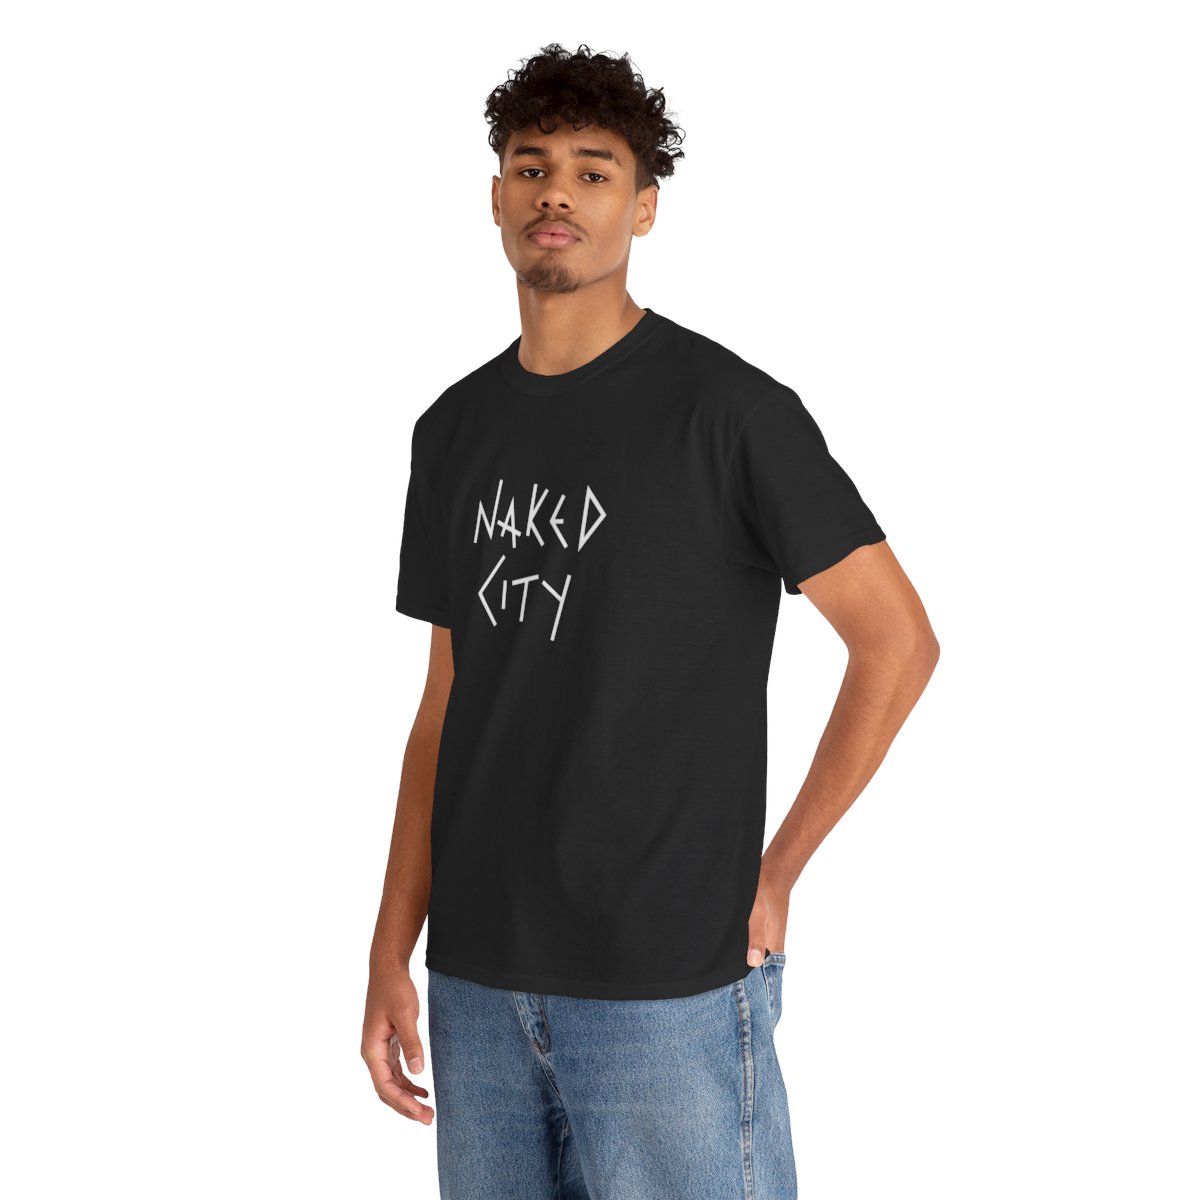 Naked City DARK T-Shirt product thumbnail image